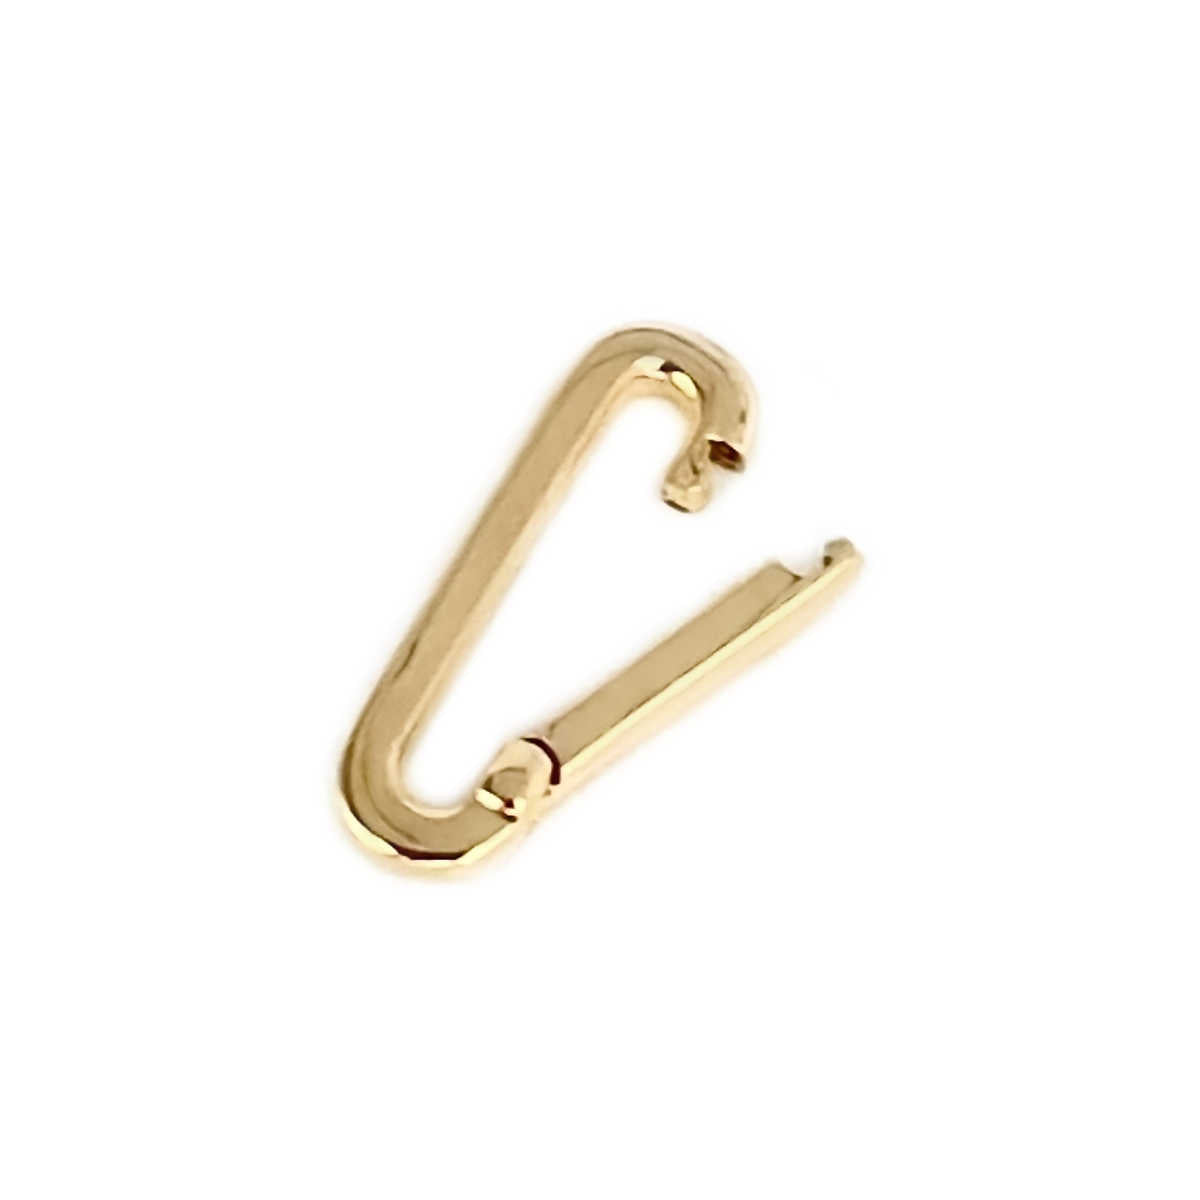 14k Gold Charm Holder for Medical Alert Bracelet, Necklace, Pendant | Multiple Charm Clip Connector